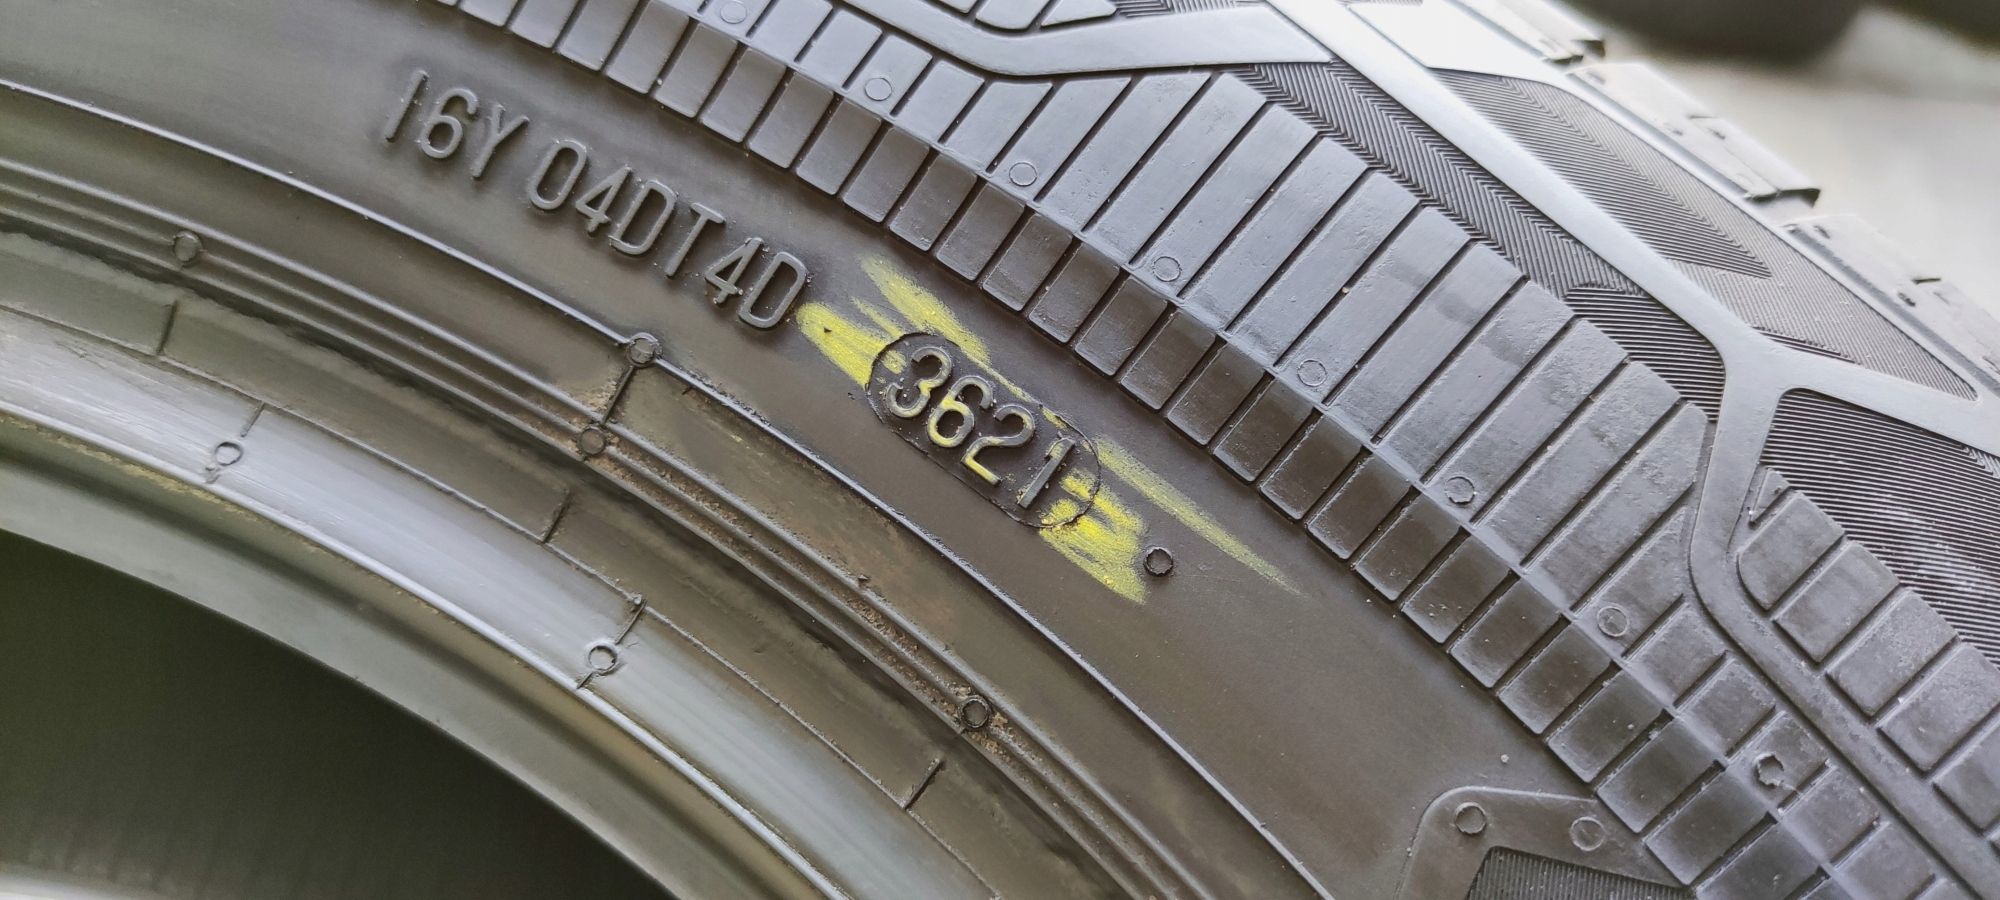 Opony 235/65/16c Continental 2x7,16mm 2x6,17mm 2021r 4szt.=1300zł L